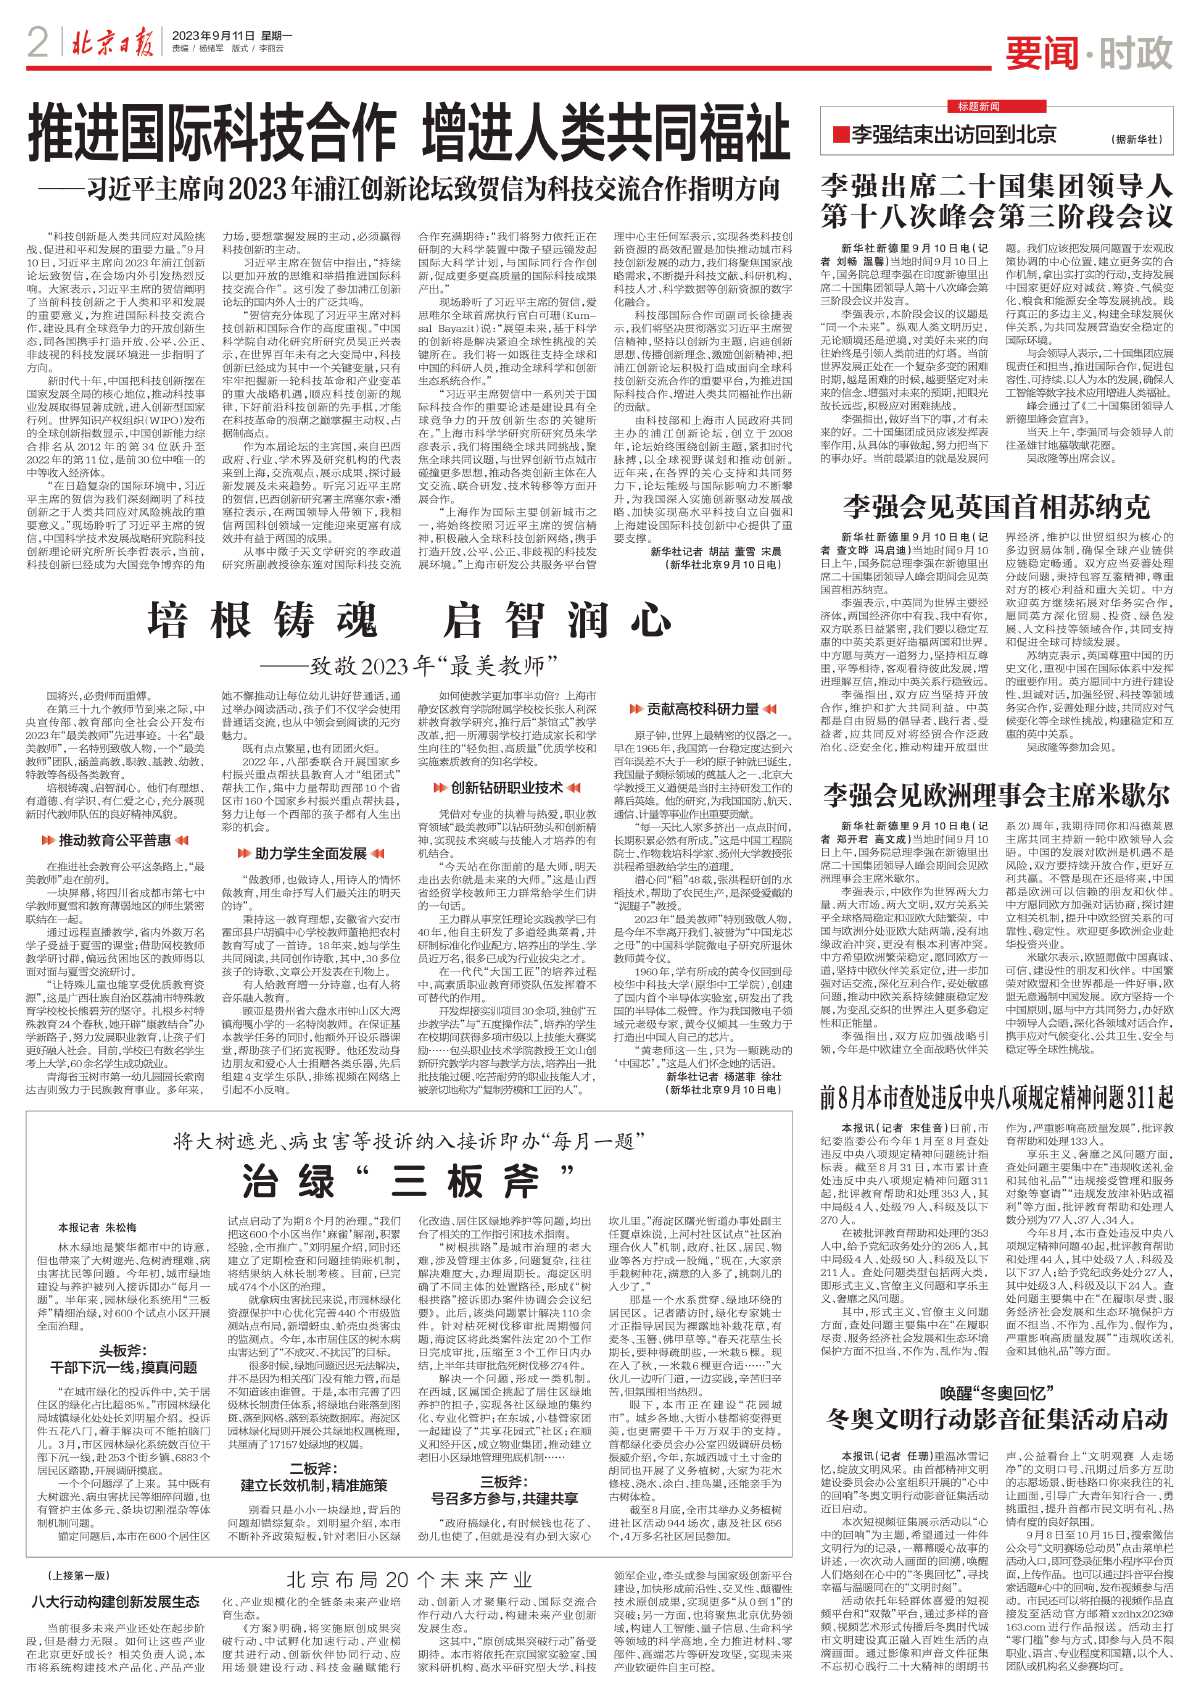 0911北京新闻-将大树遮光、病虫害等投诉纳入接诉即办“每月一题”%0D%0A治绿“三板斧”.jpg